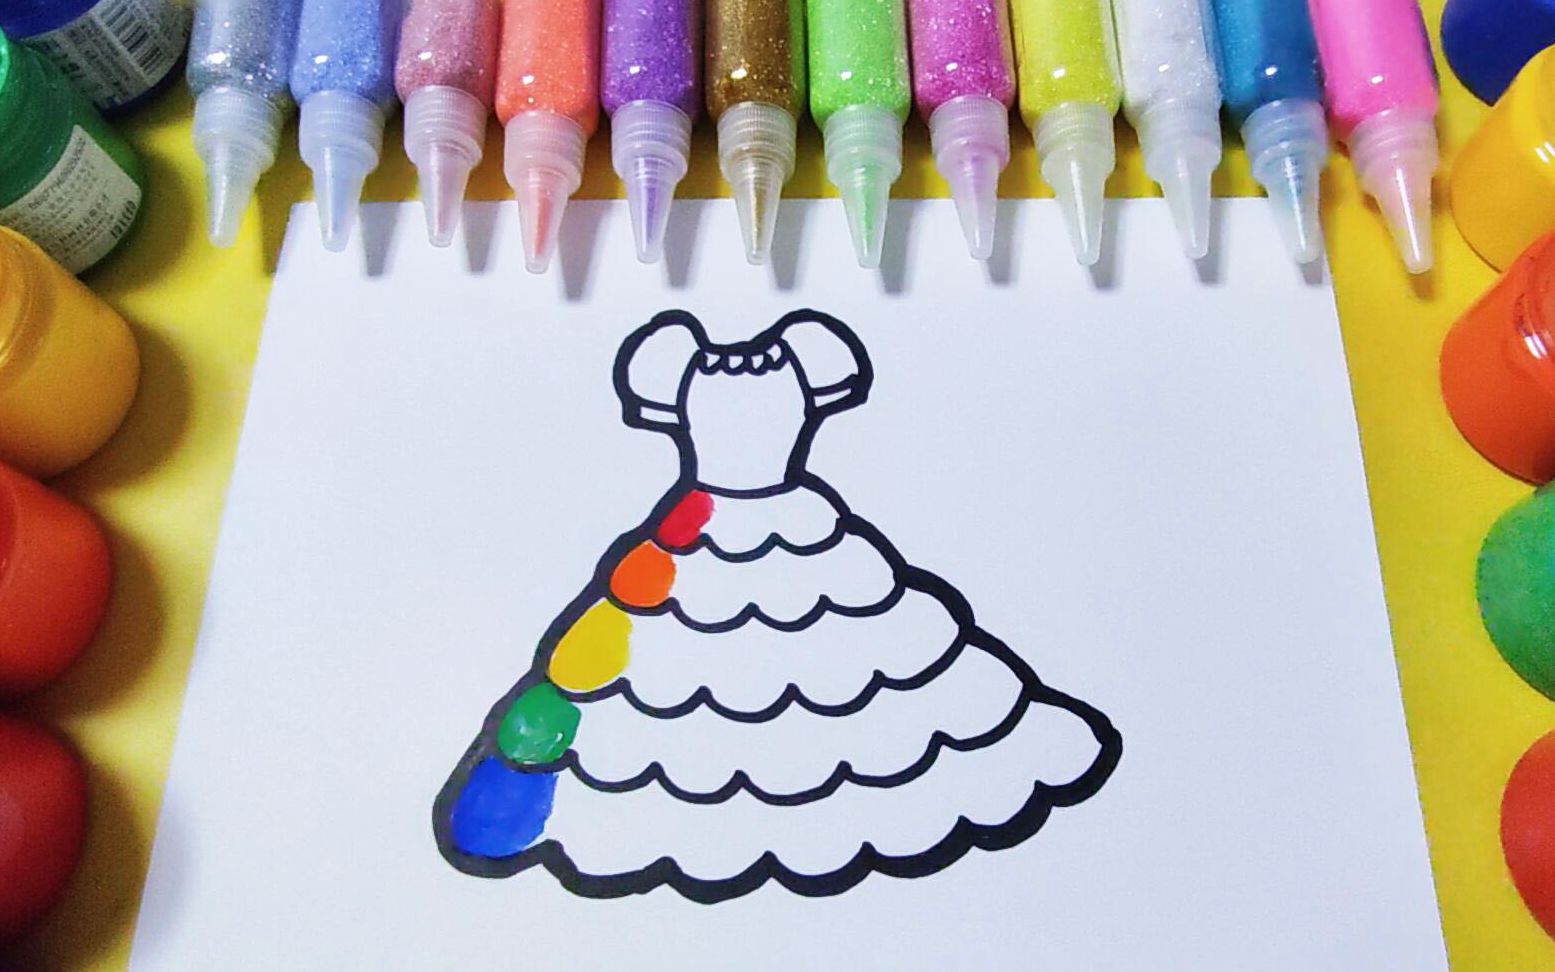 儿童简笔画教程:画一件漂亮的彩色裙子,一起学画画吧